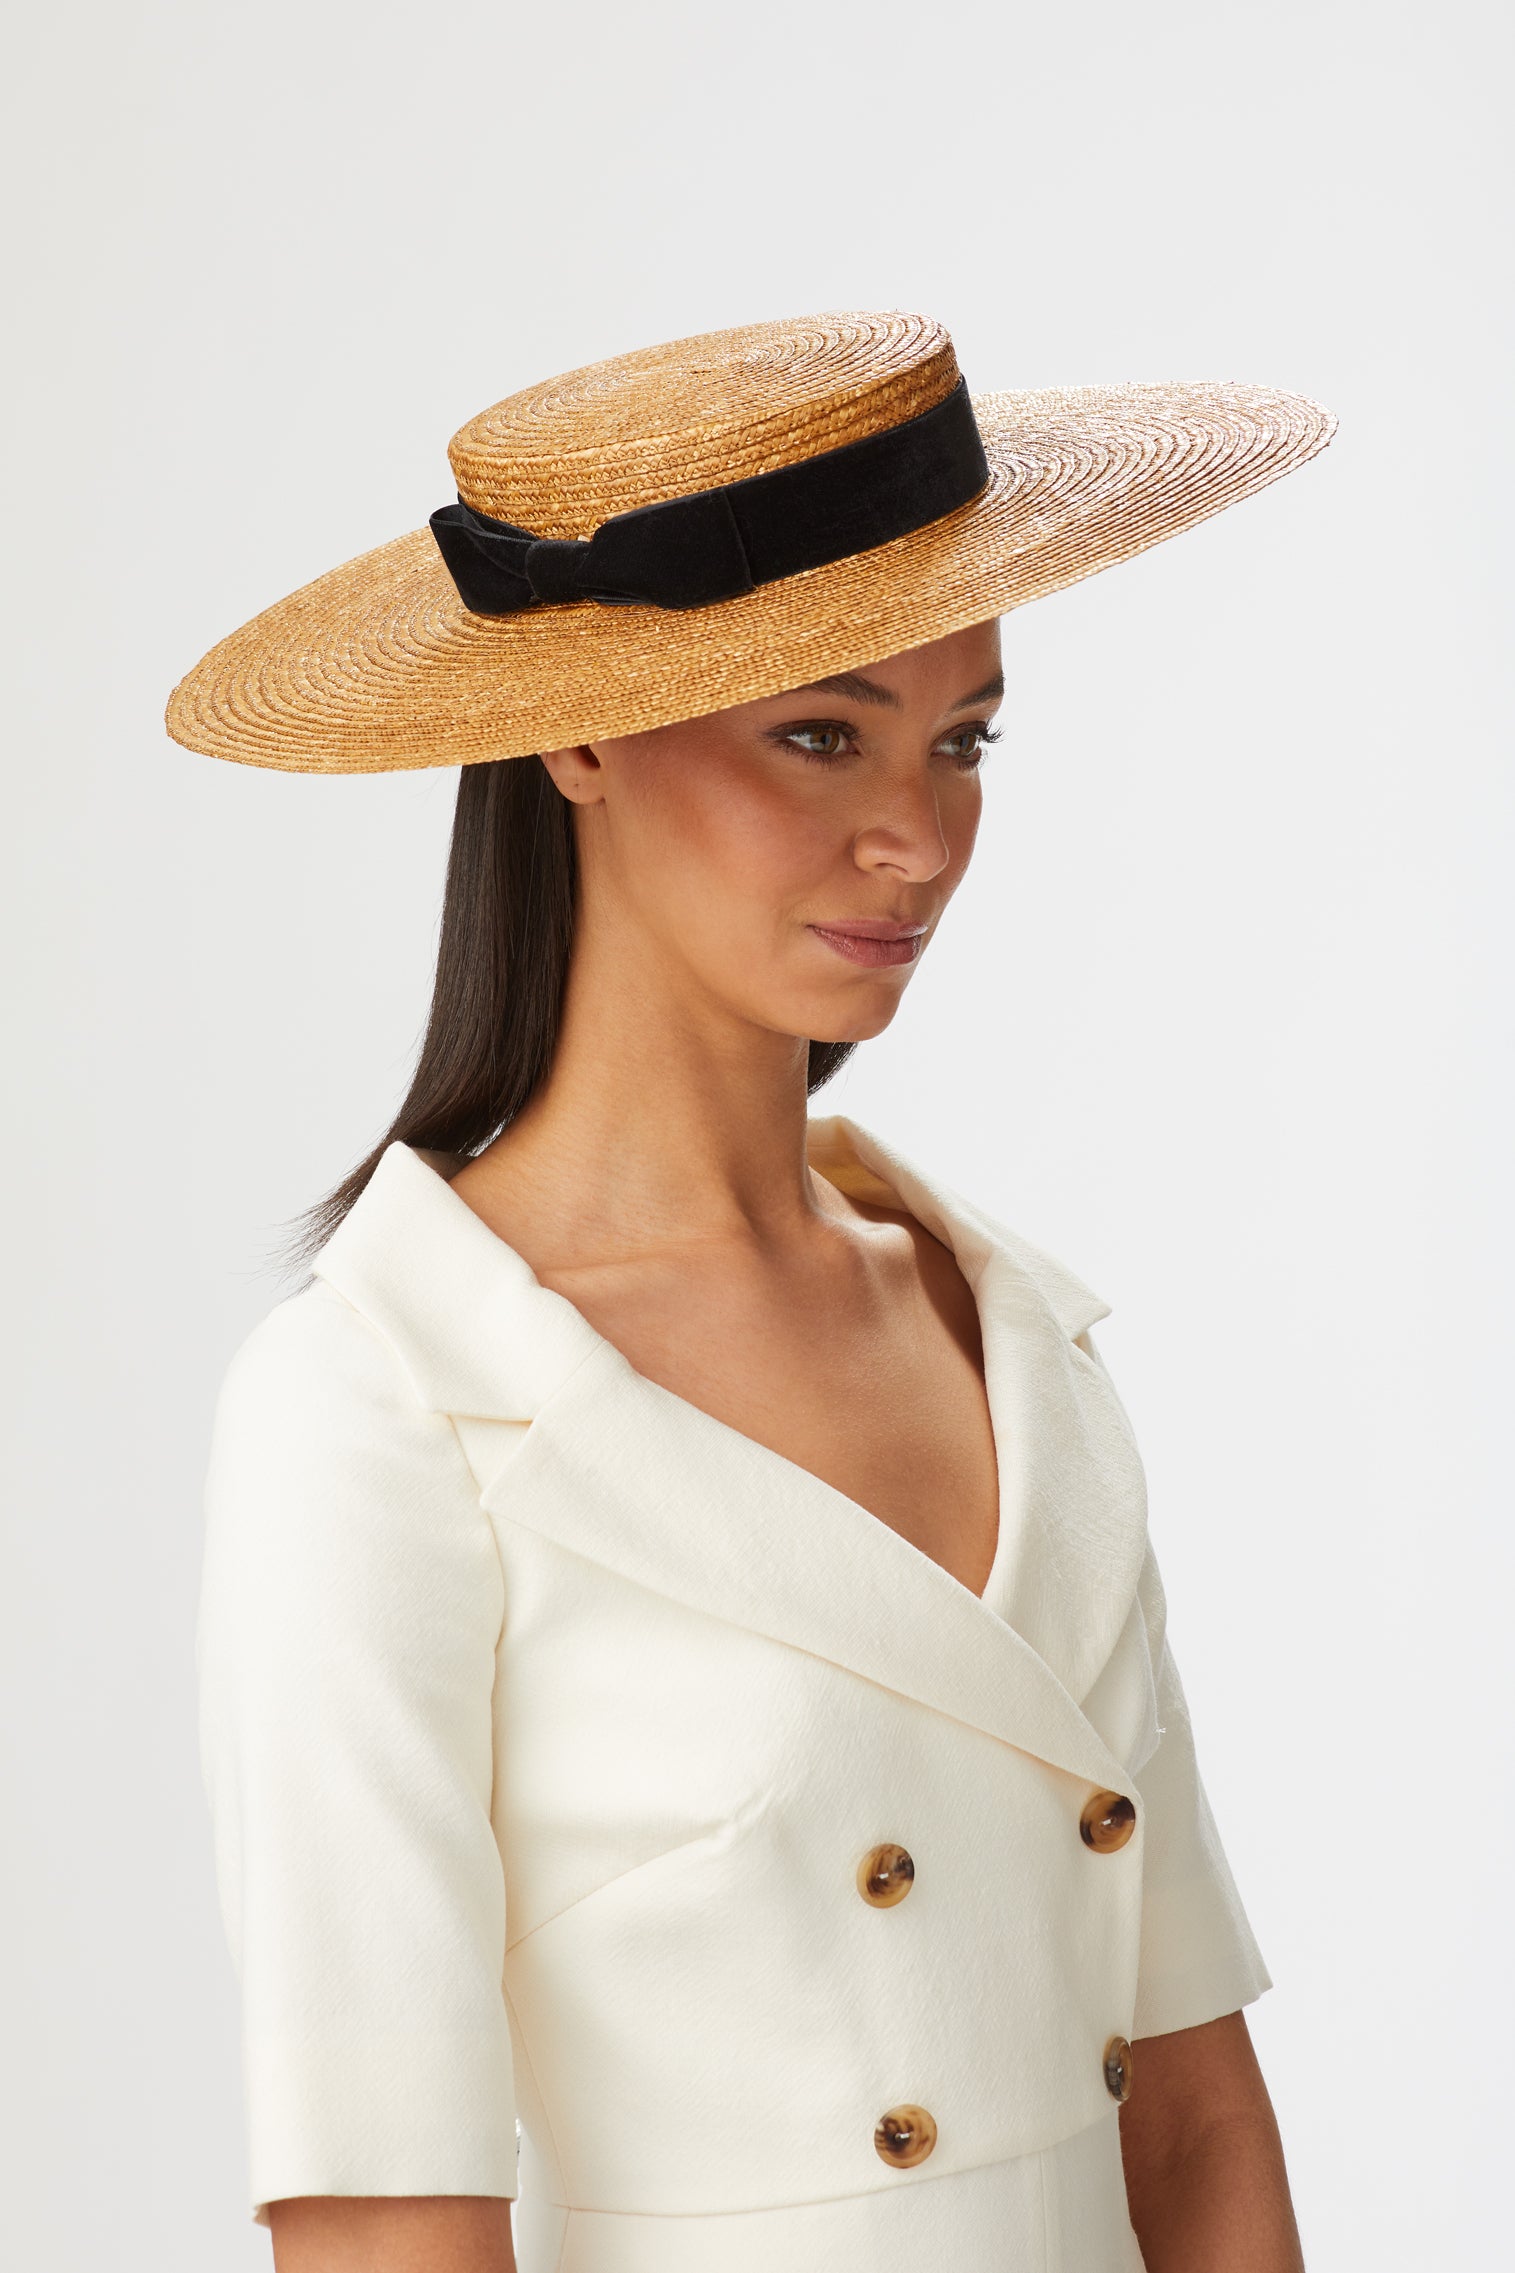 Branka Boater - Boater Hats for Women - Lock & Co. Hatters London UK